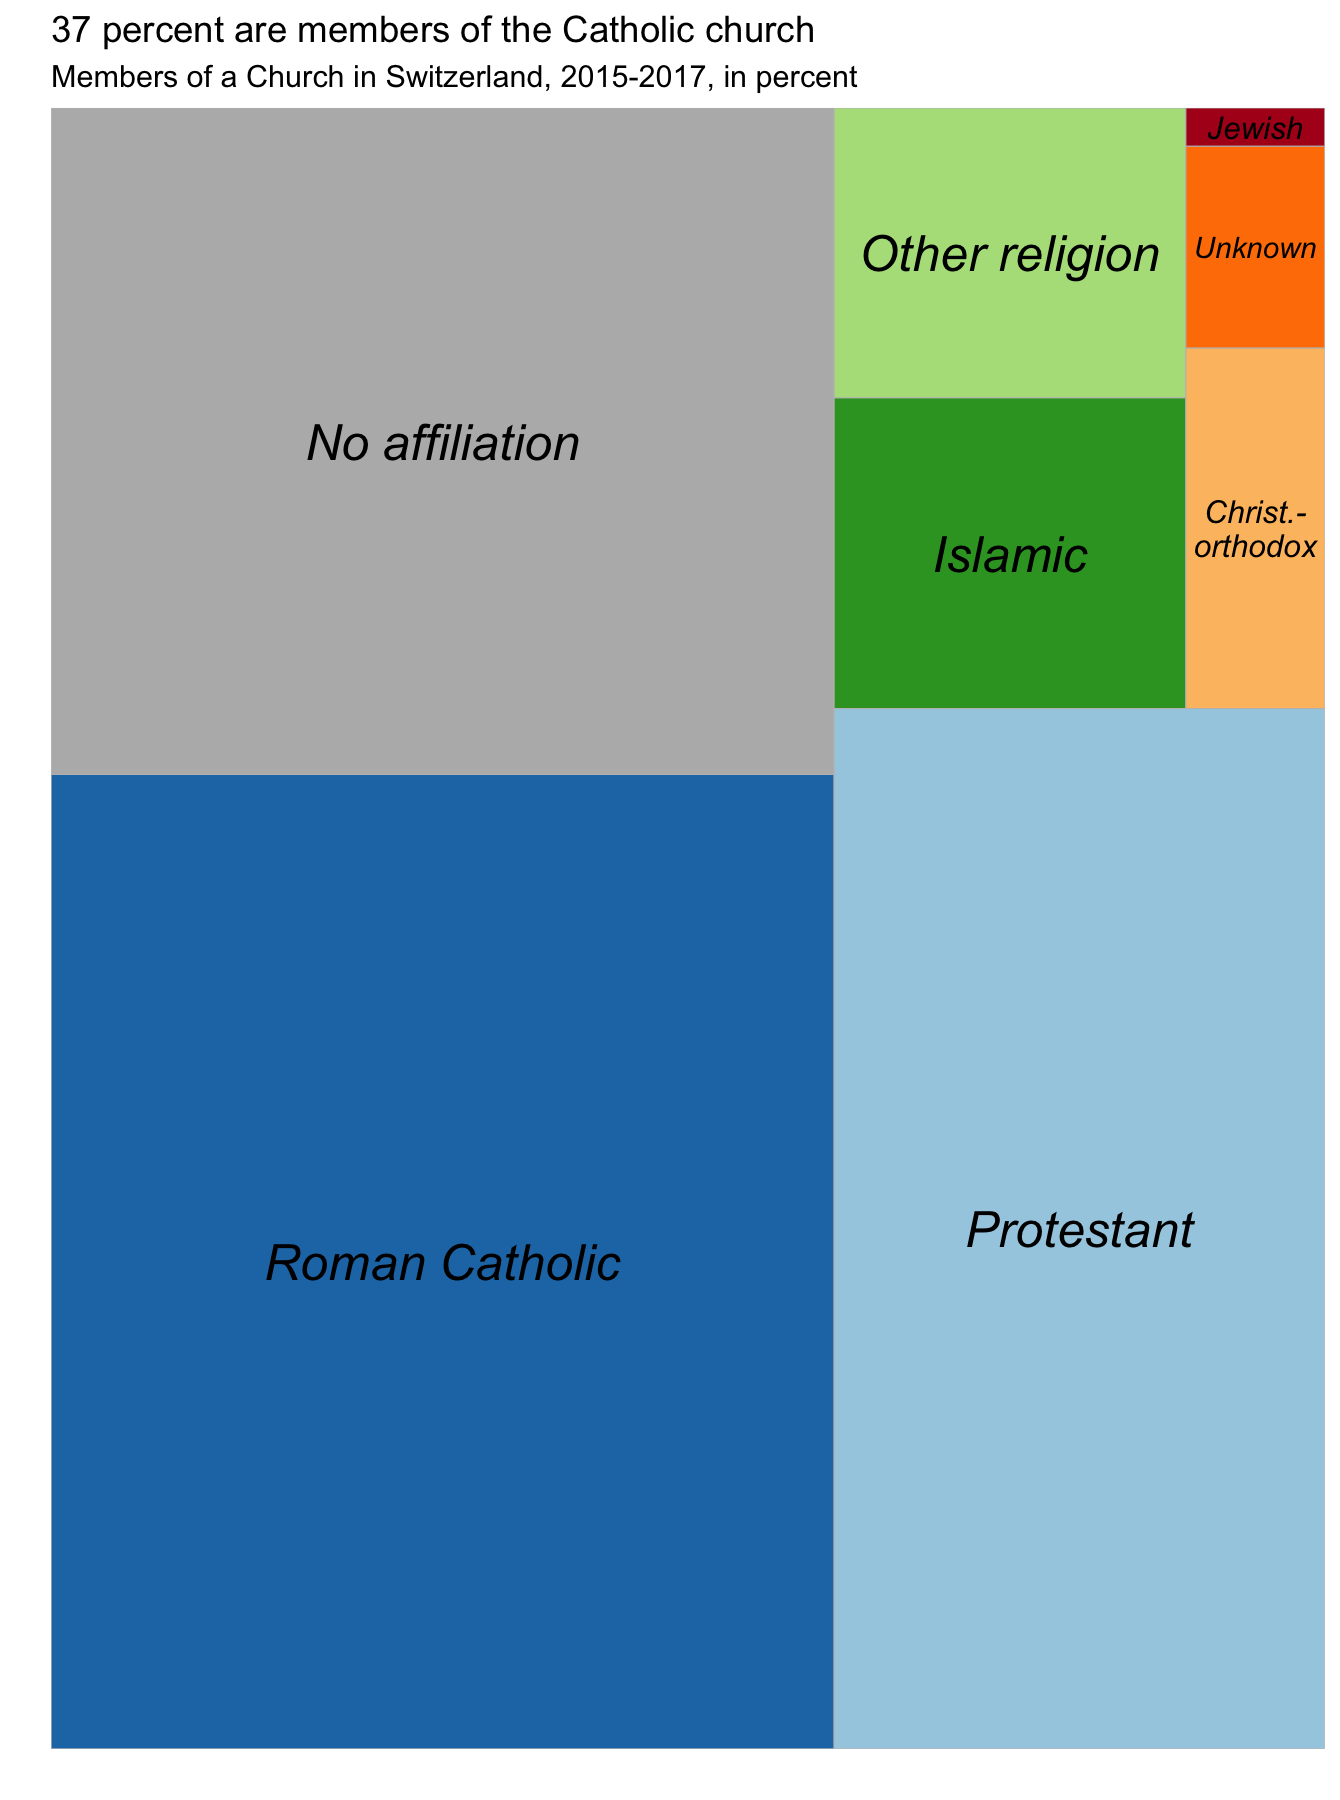 graphic of religious breakdown